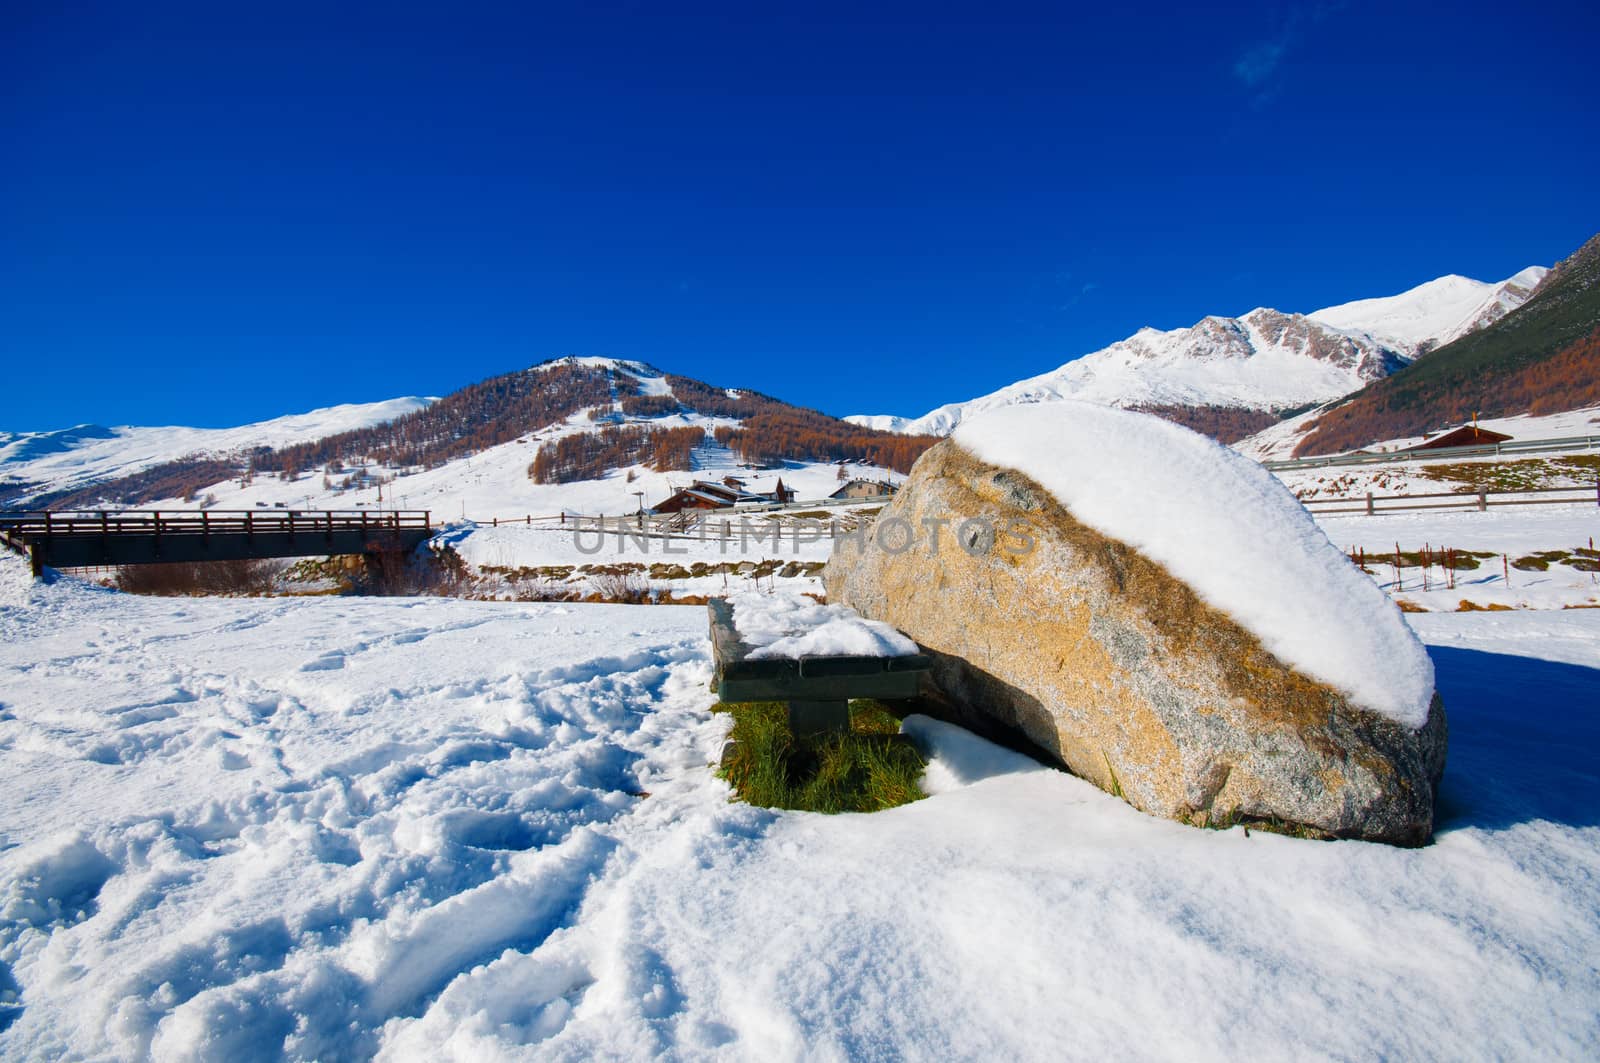 Livigno in winter landscape